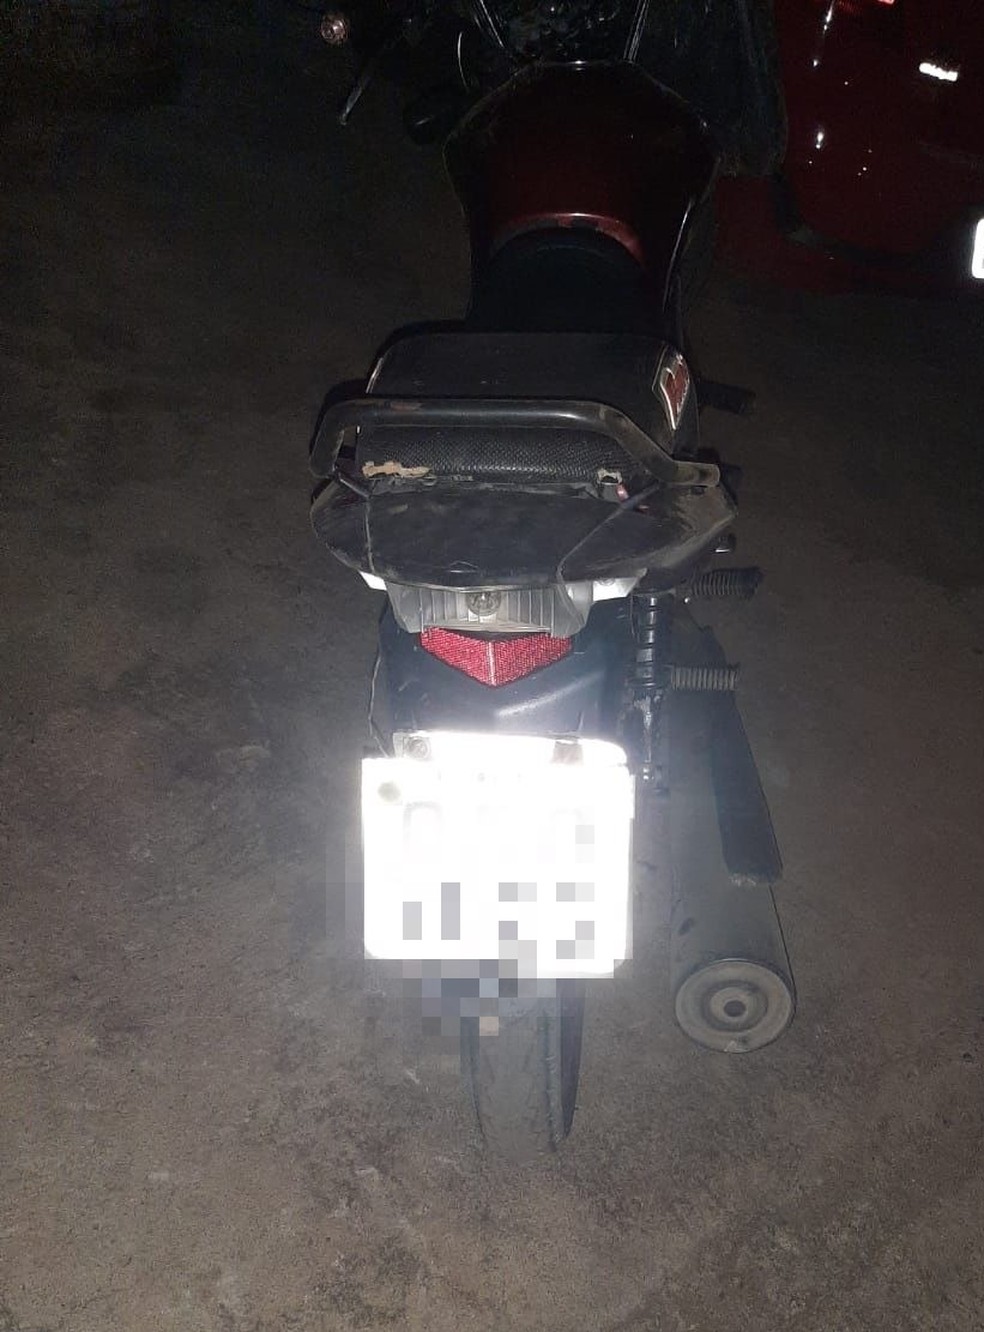 Motorista alcoolizado jogou moto contra policiais para fugir em abordagem na CE-189, no interior do Ceará — Foto: Reprodução